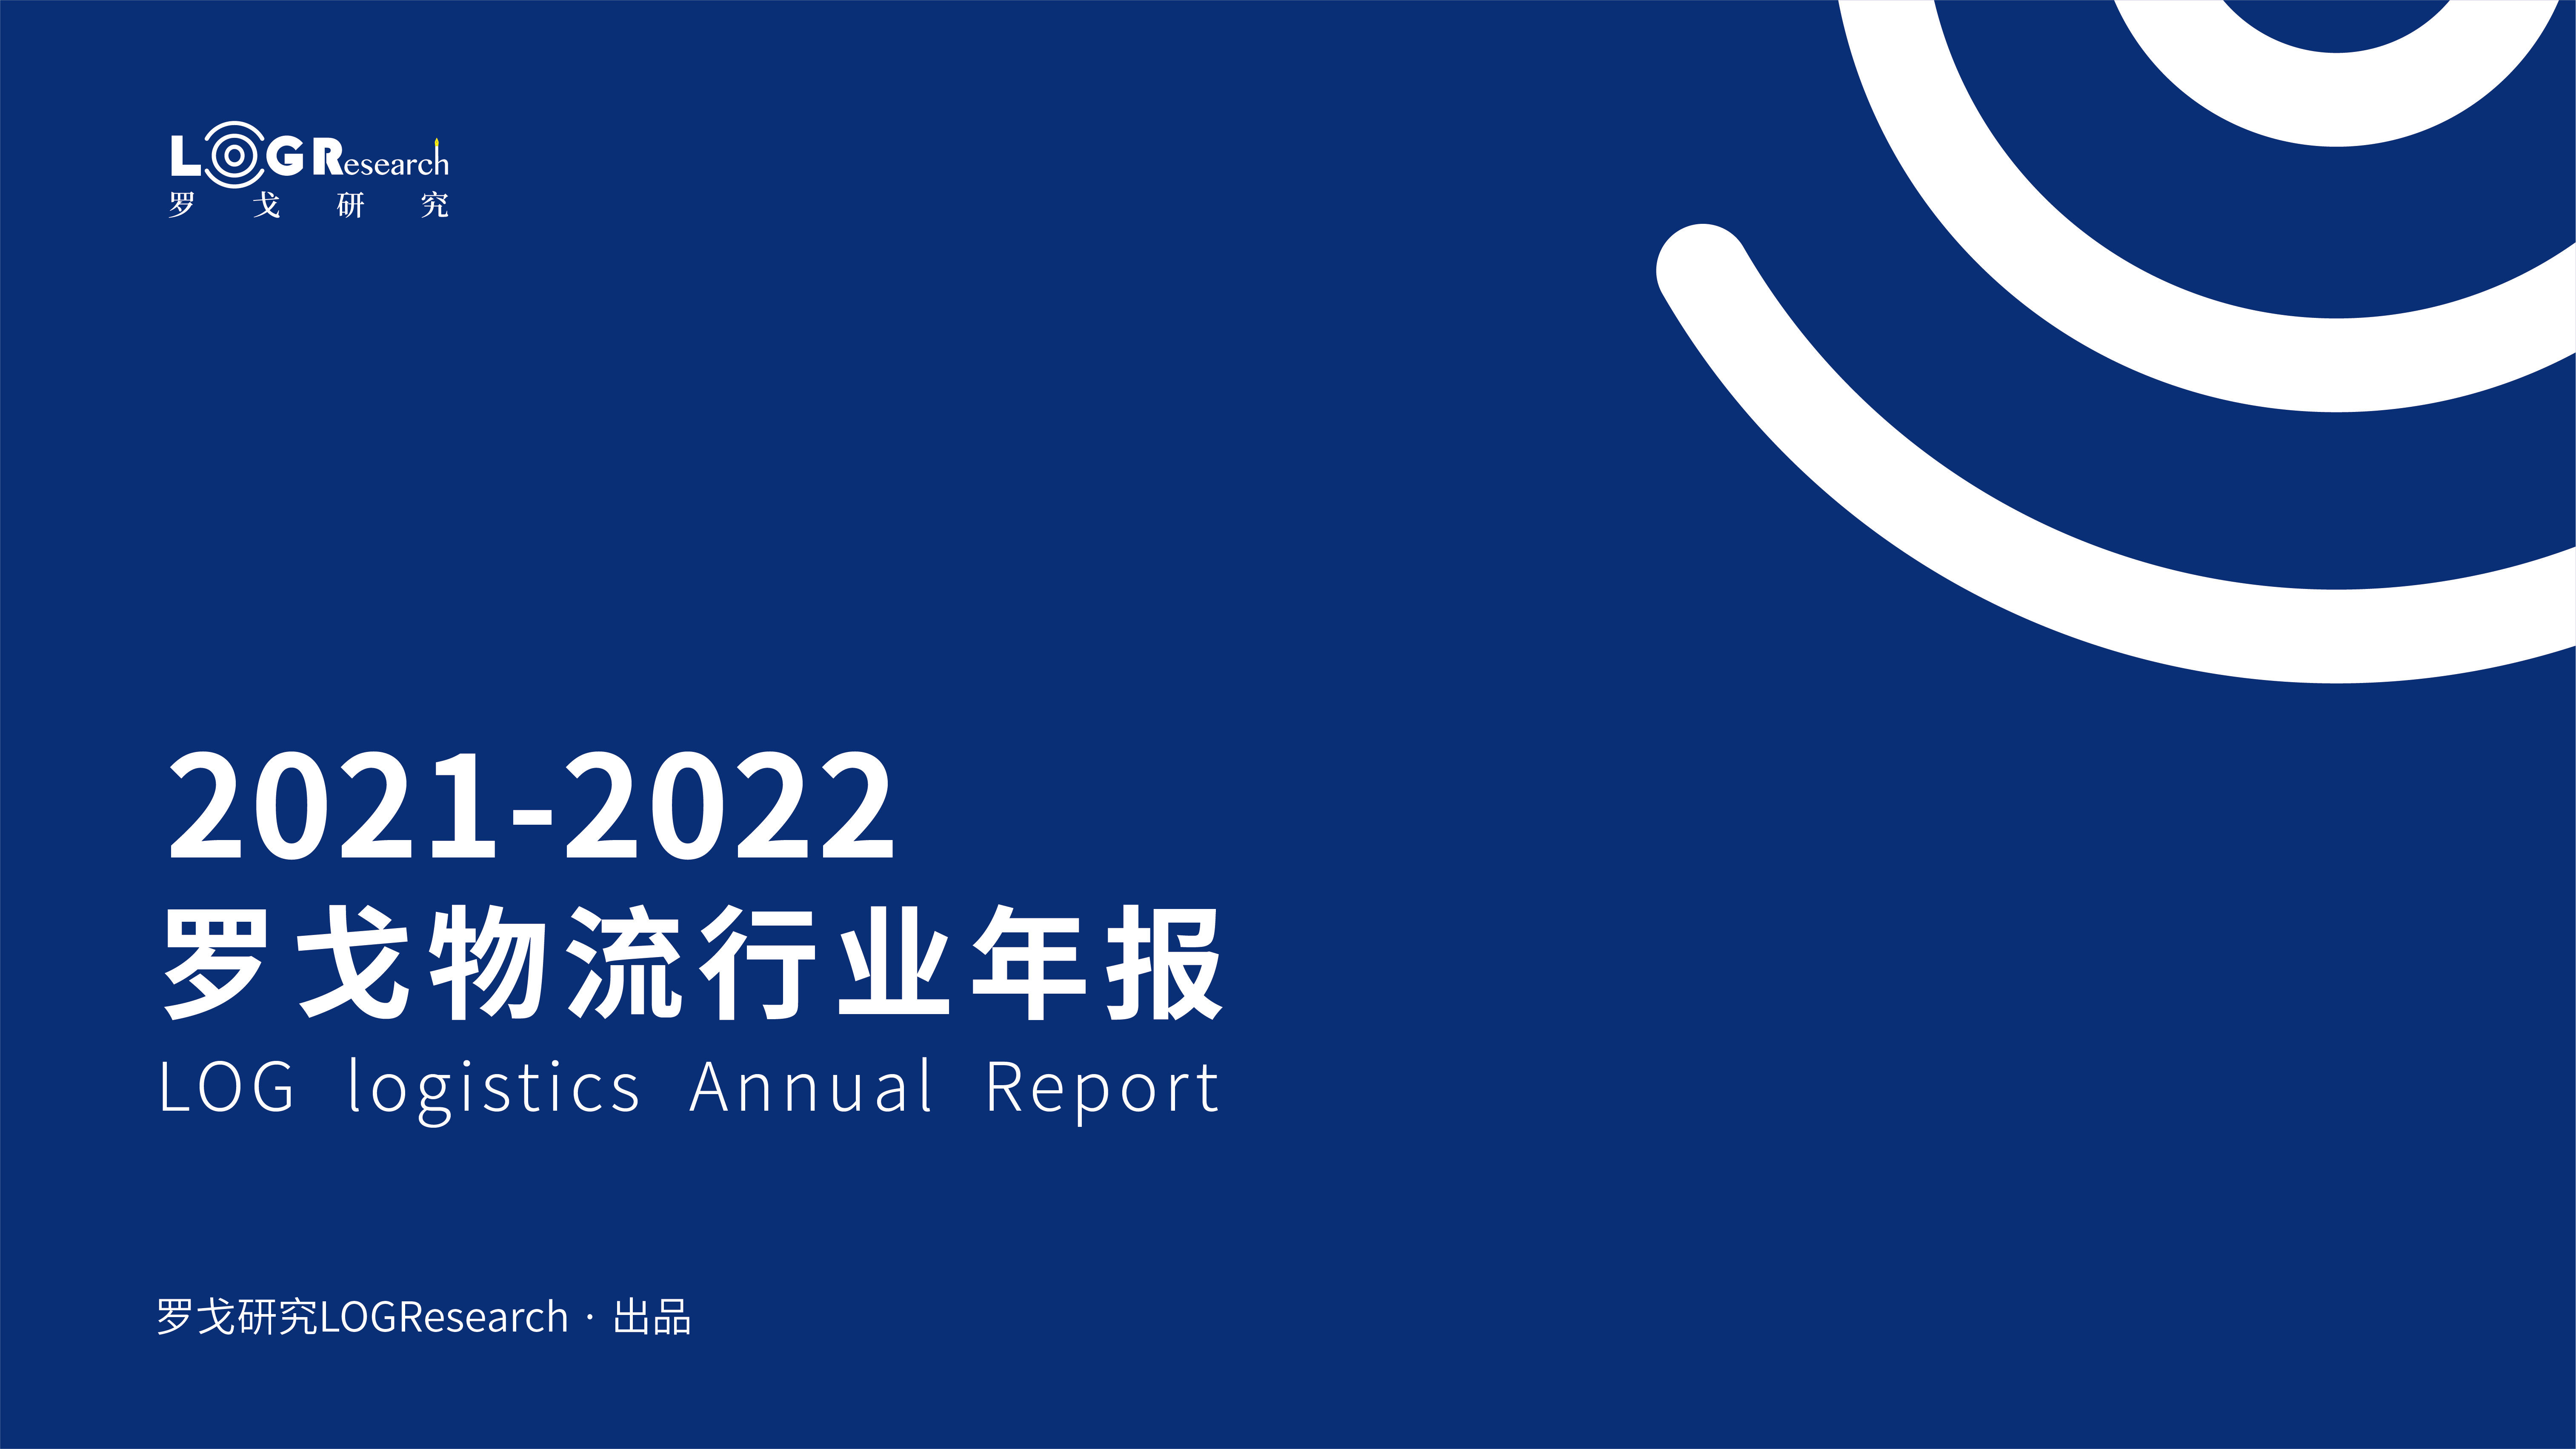 罗戈研究 | 2021-2022罗戈物流行业年报